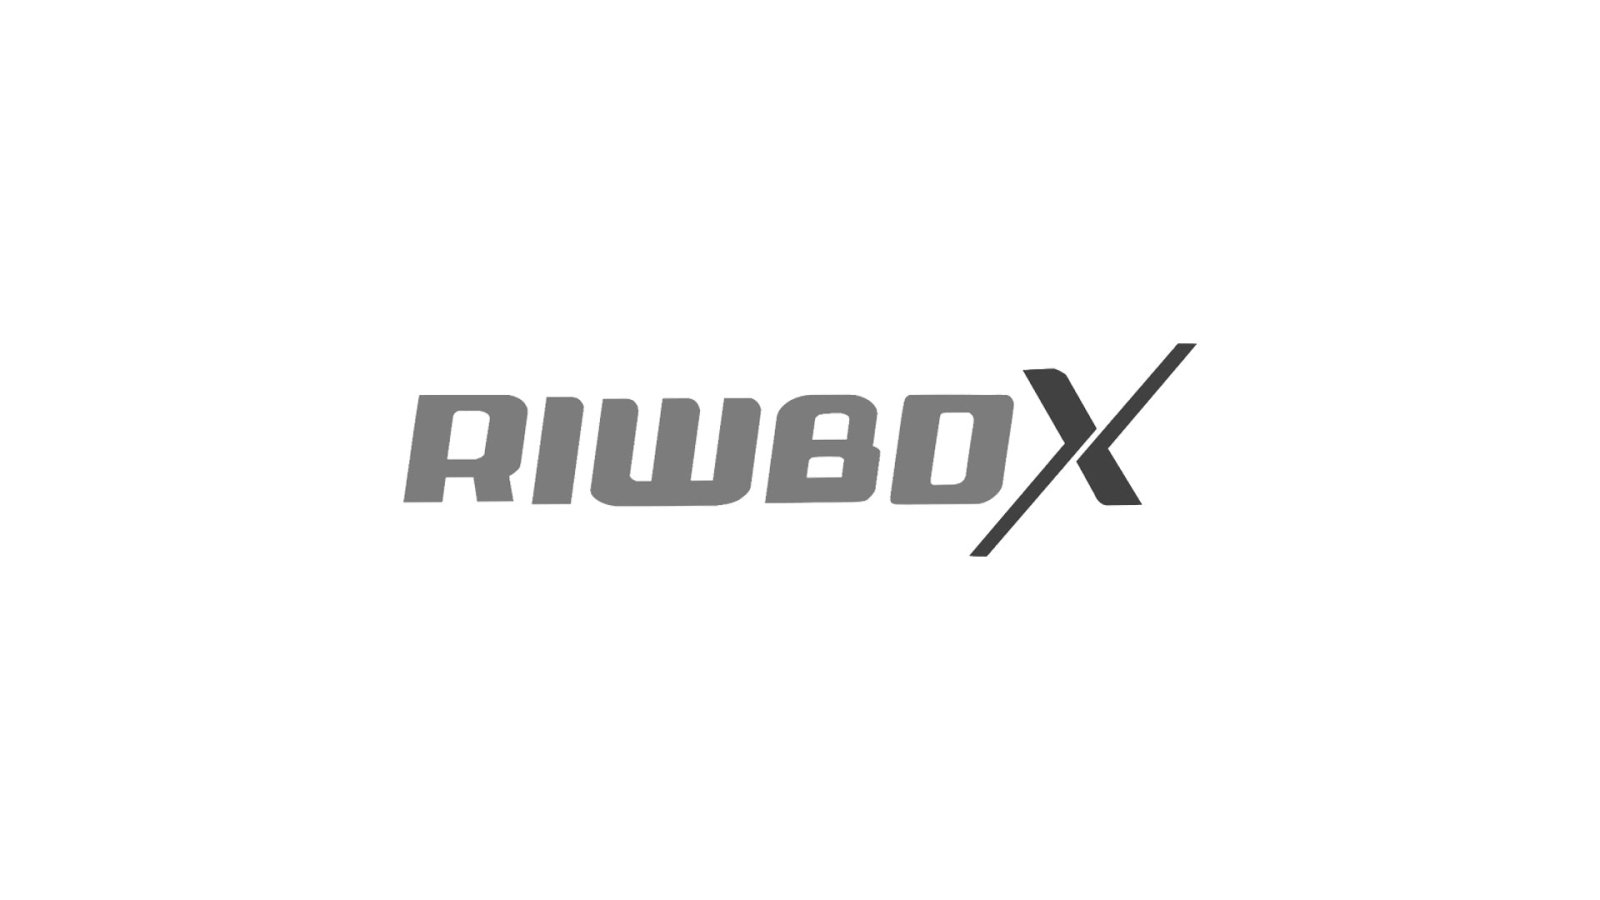 Riwbox - WahaLifeStyle